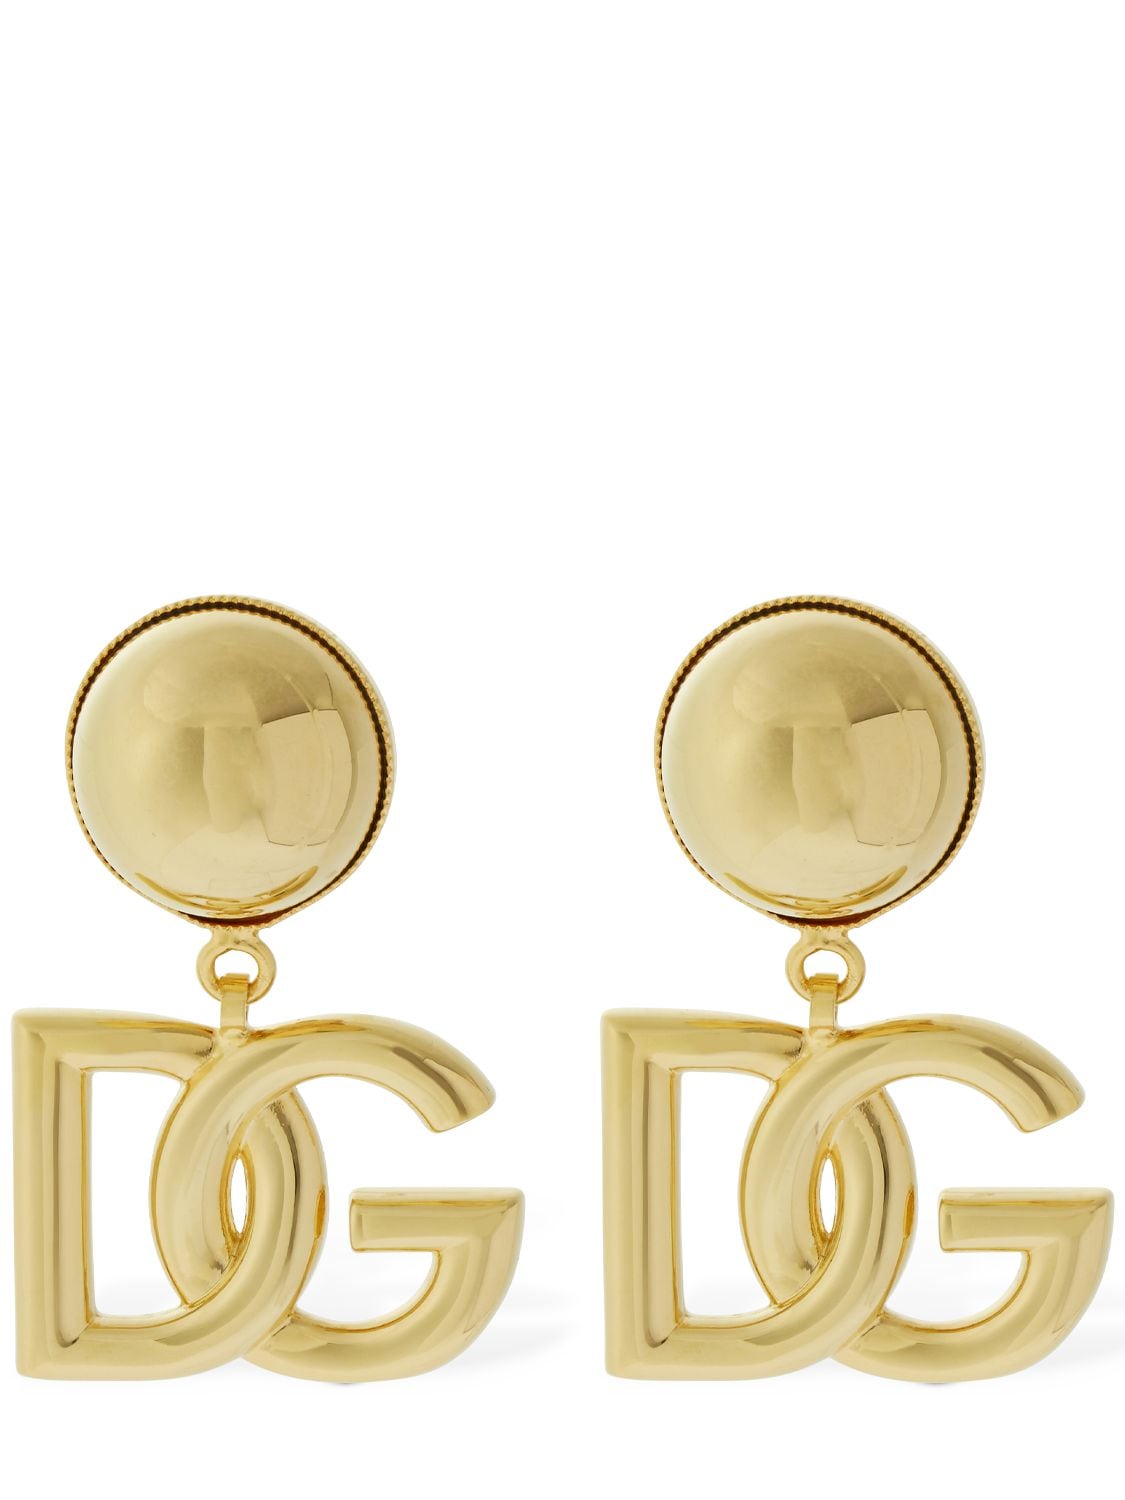 Dolce & Gabbana Pop Dg Clip-on Earrings In Gold